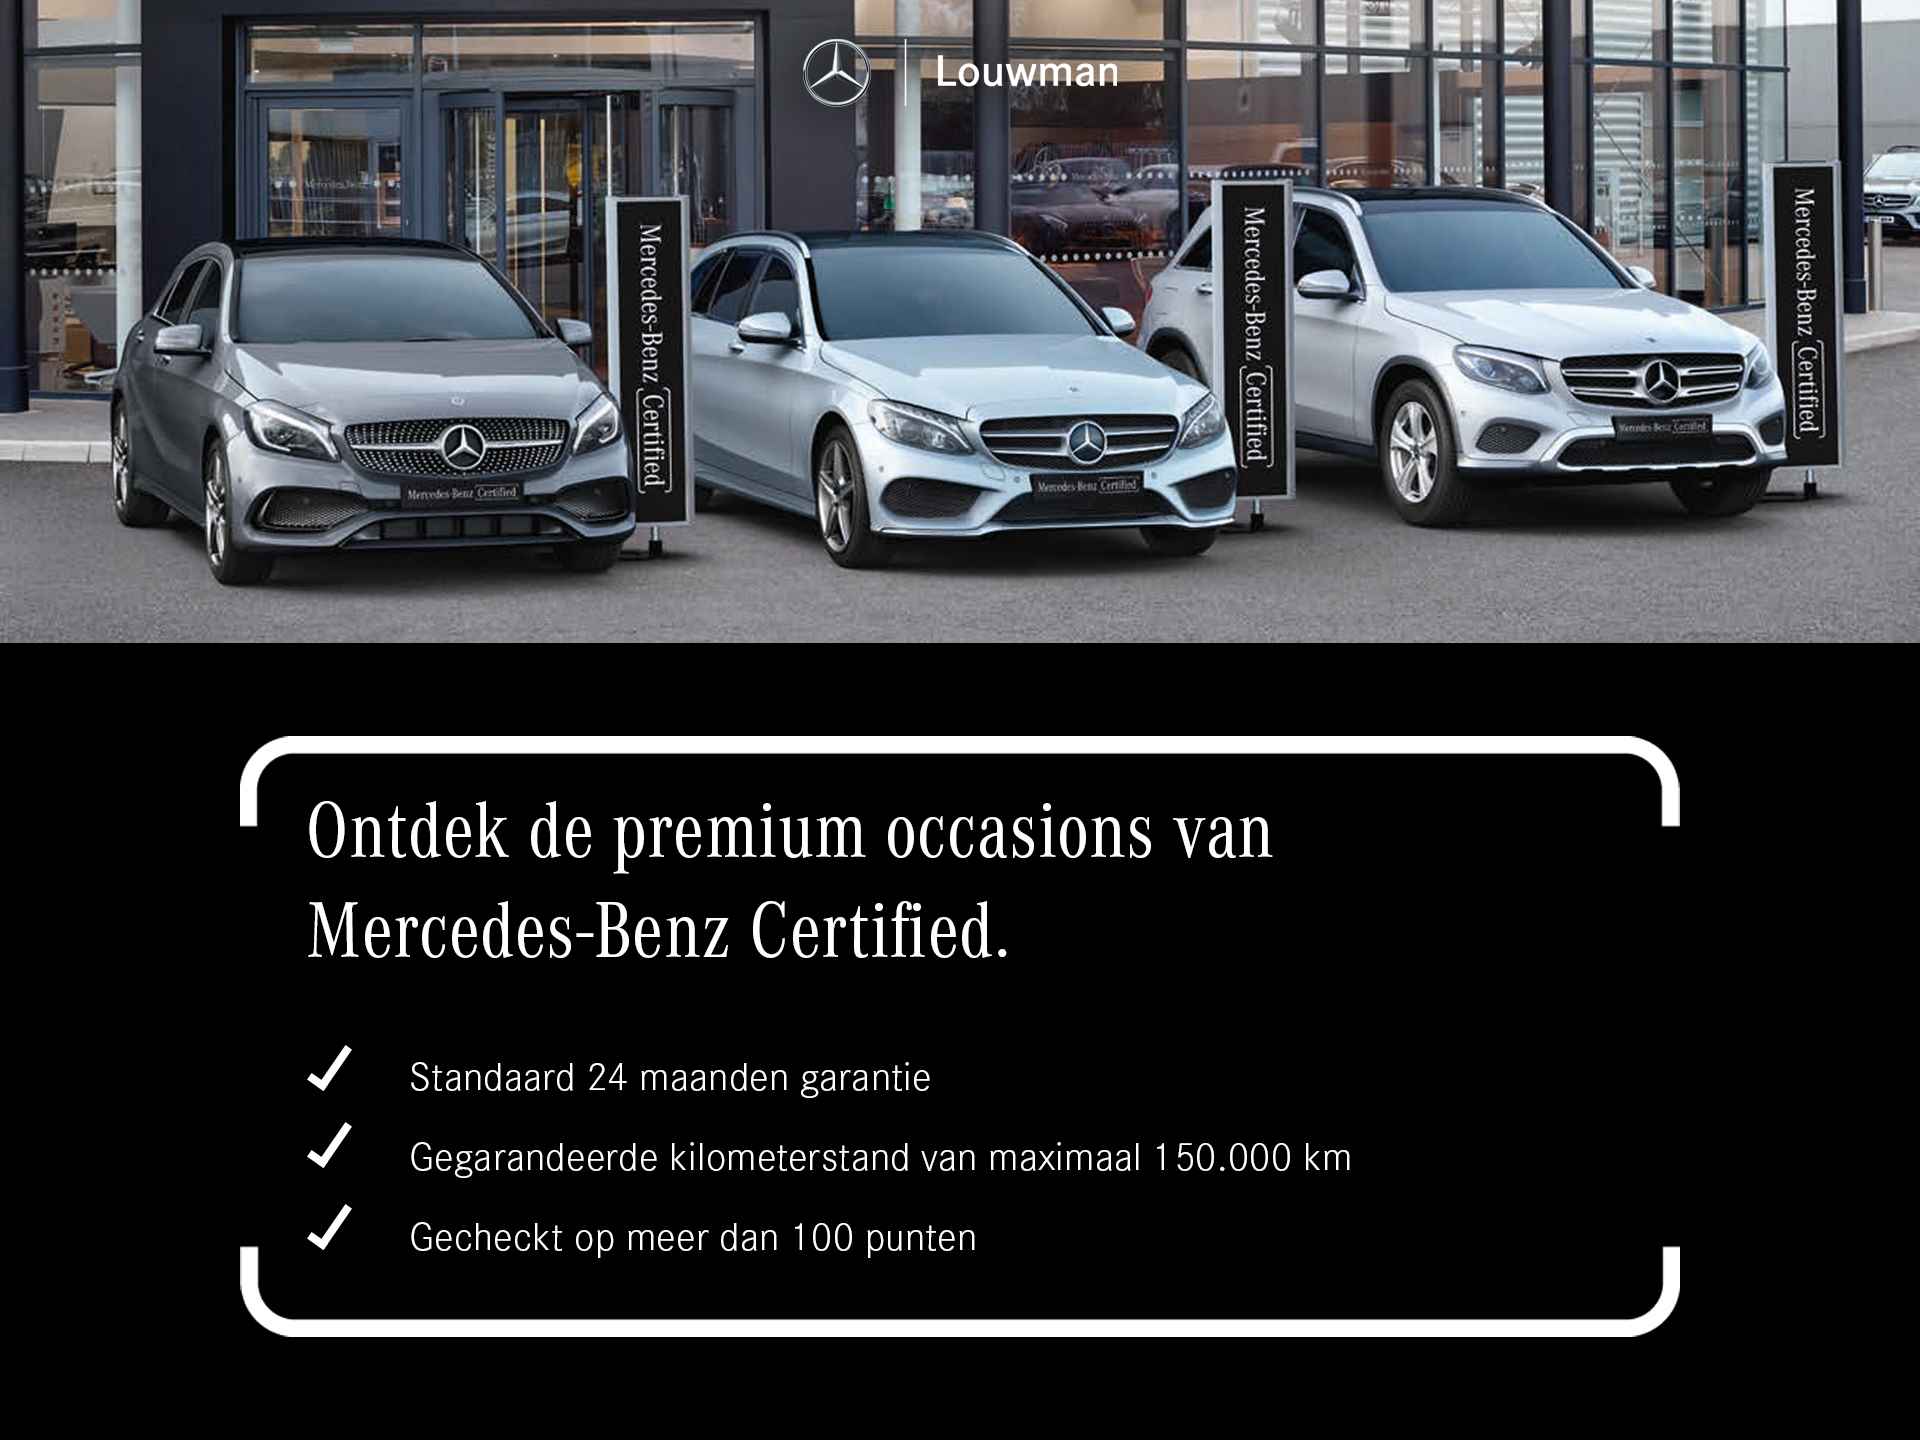 Mercedes-Benz B-Klasse 180 AMG Line | Premium Plus pakket | Nightpakket | Smartphone integratiepakket | Inclusief 24 maanden Mercedes-Benz Certified garantie voor Europa. - 36/37